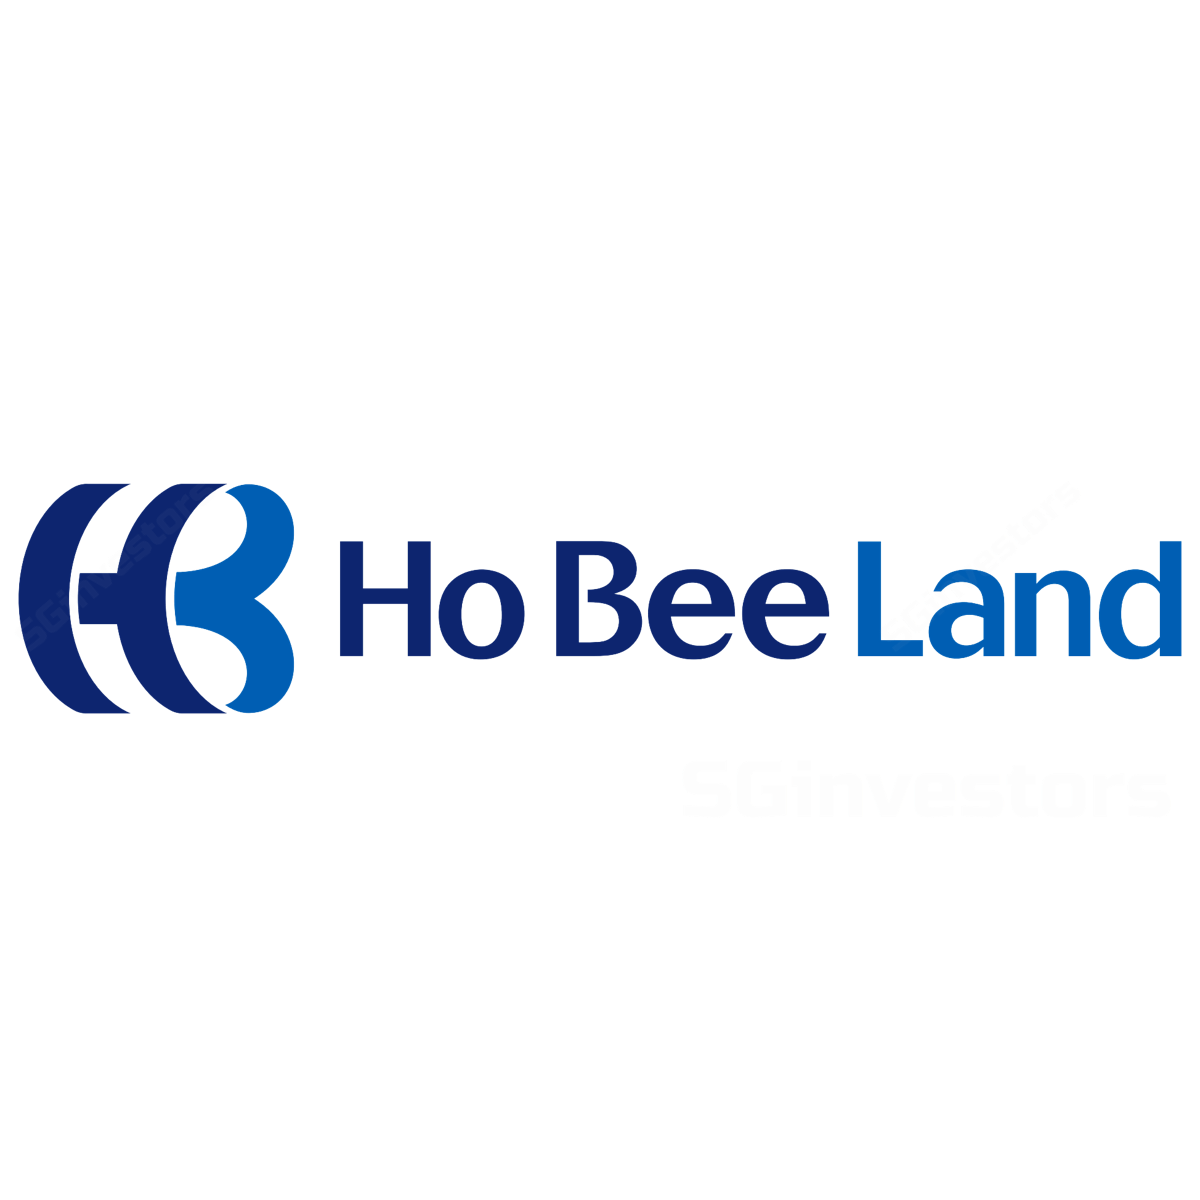 DBS: Ho Bee Land Ltd – Buy Target Price $3.80